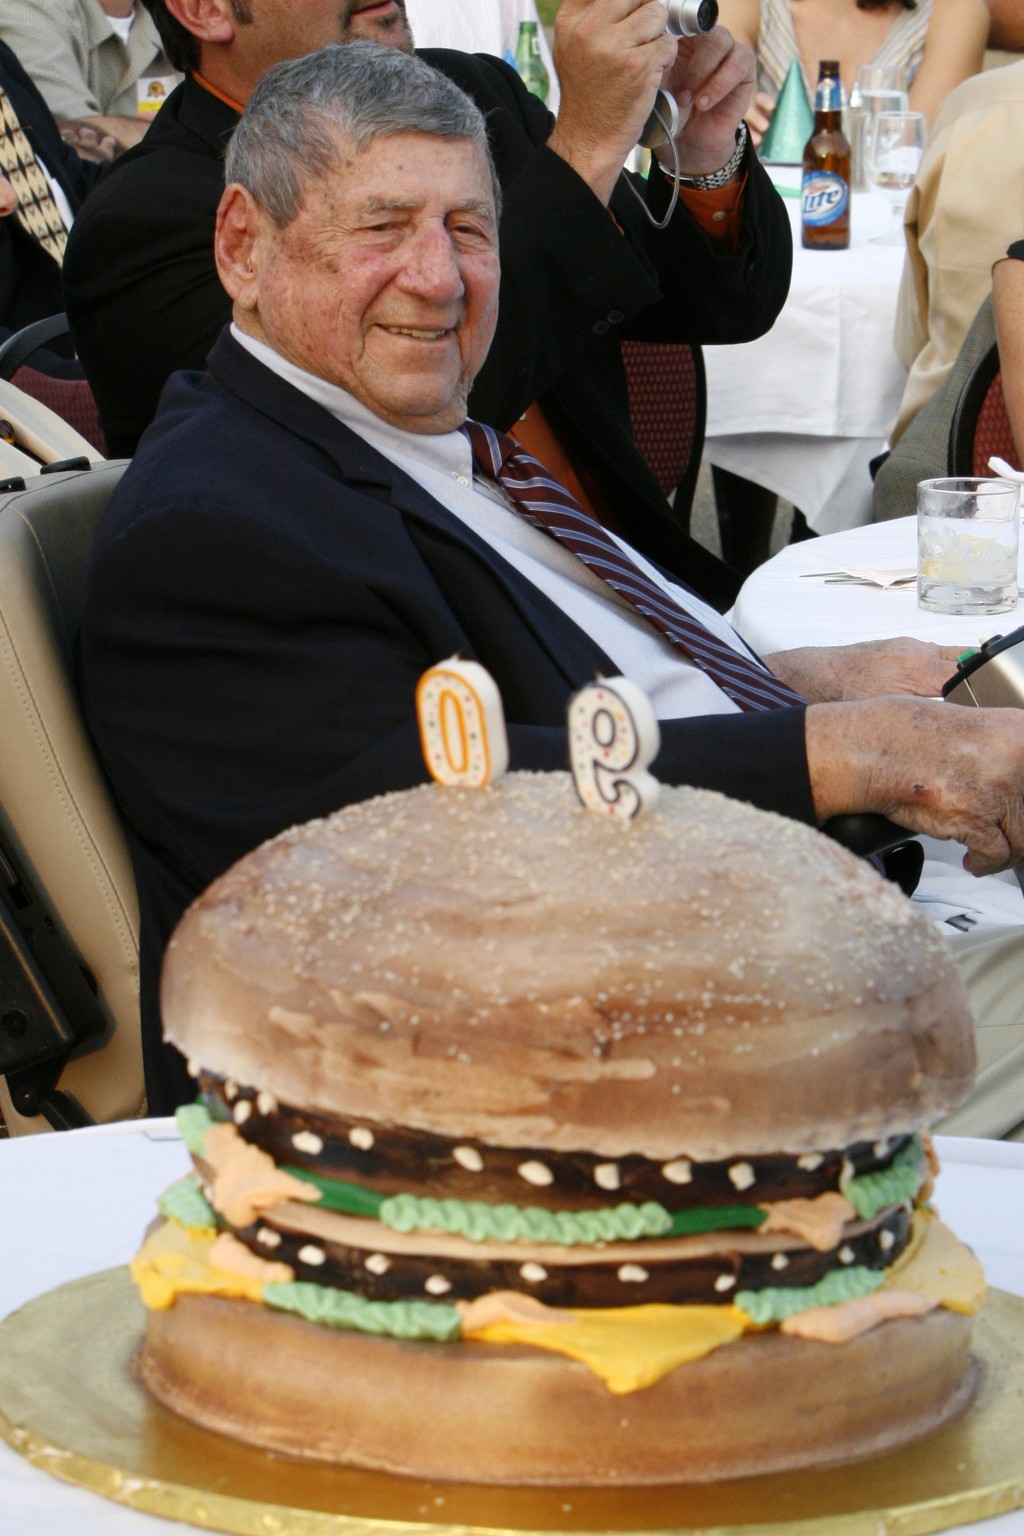 已故巨無霸發明者德利加蒂90歲時以「特大巨無霸蛋糕」慶祝生日。 美聯社